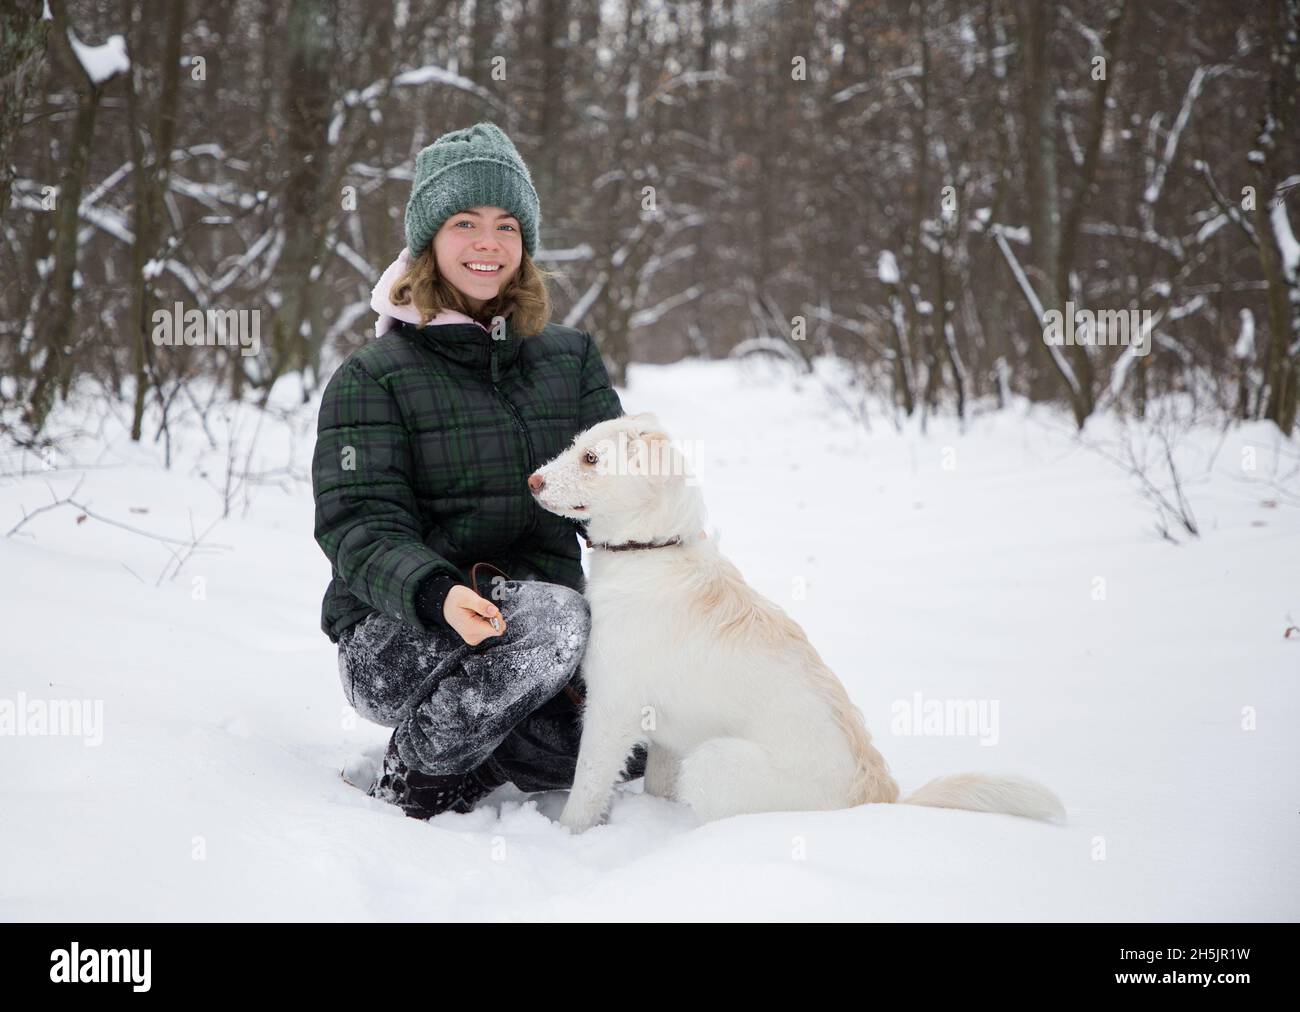 linda niña adolescente sonriente de 16-17 años camina en el bosque nevado con su perro blanco. temporada fría de invierno. Estilo de vida activo, caminando con su querida mascota, jo Foto de stock